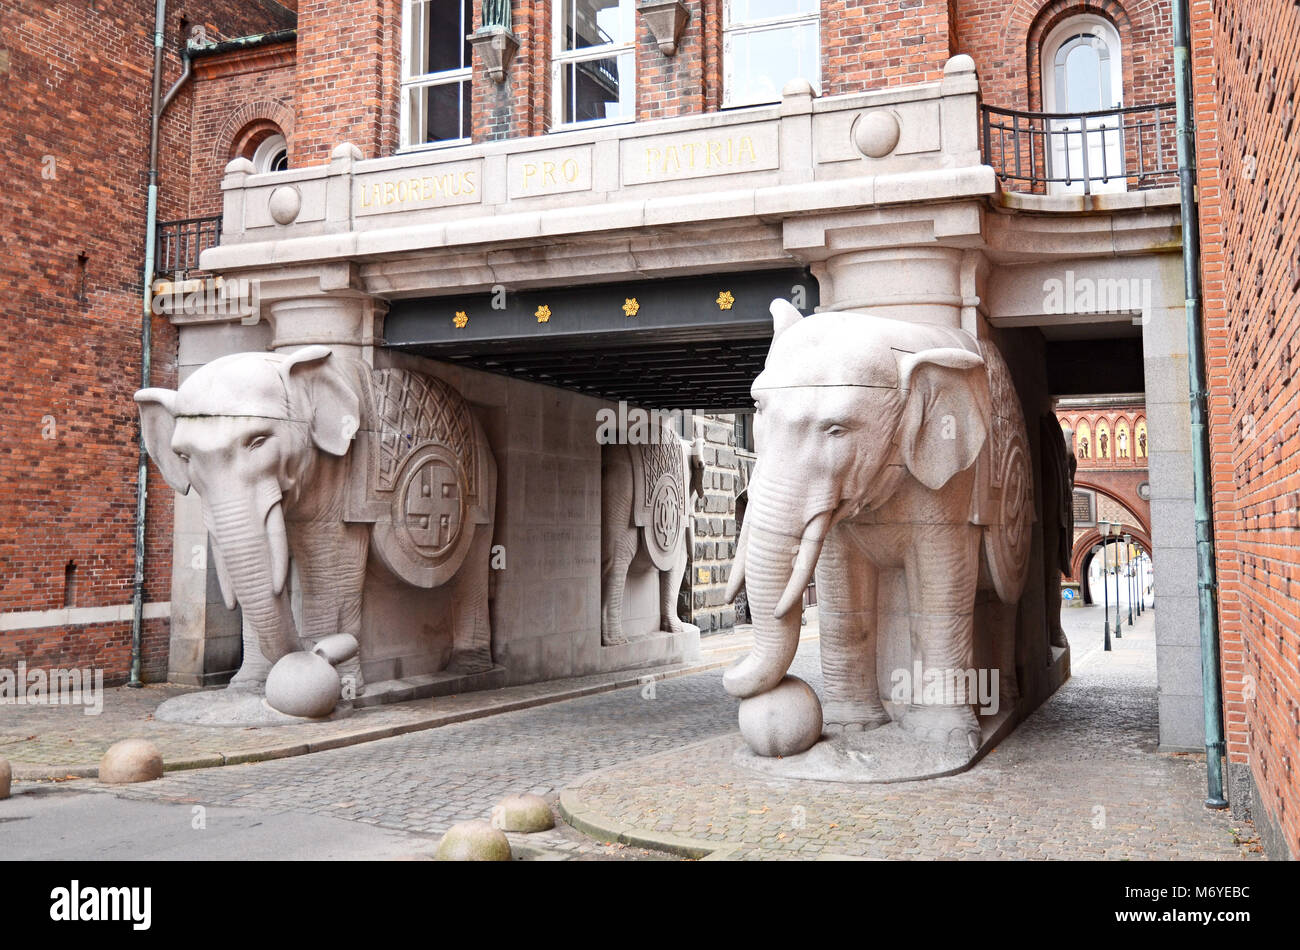 La gate di elefante presso la fabbrica di birra Carlsberg a Copenhagen, Danimarca Foto Stock